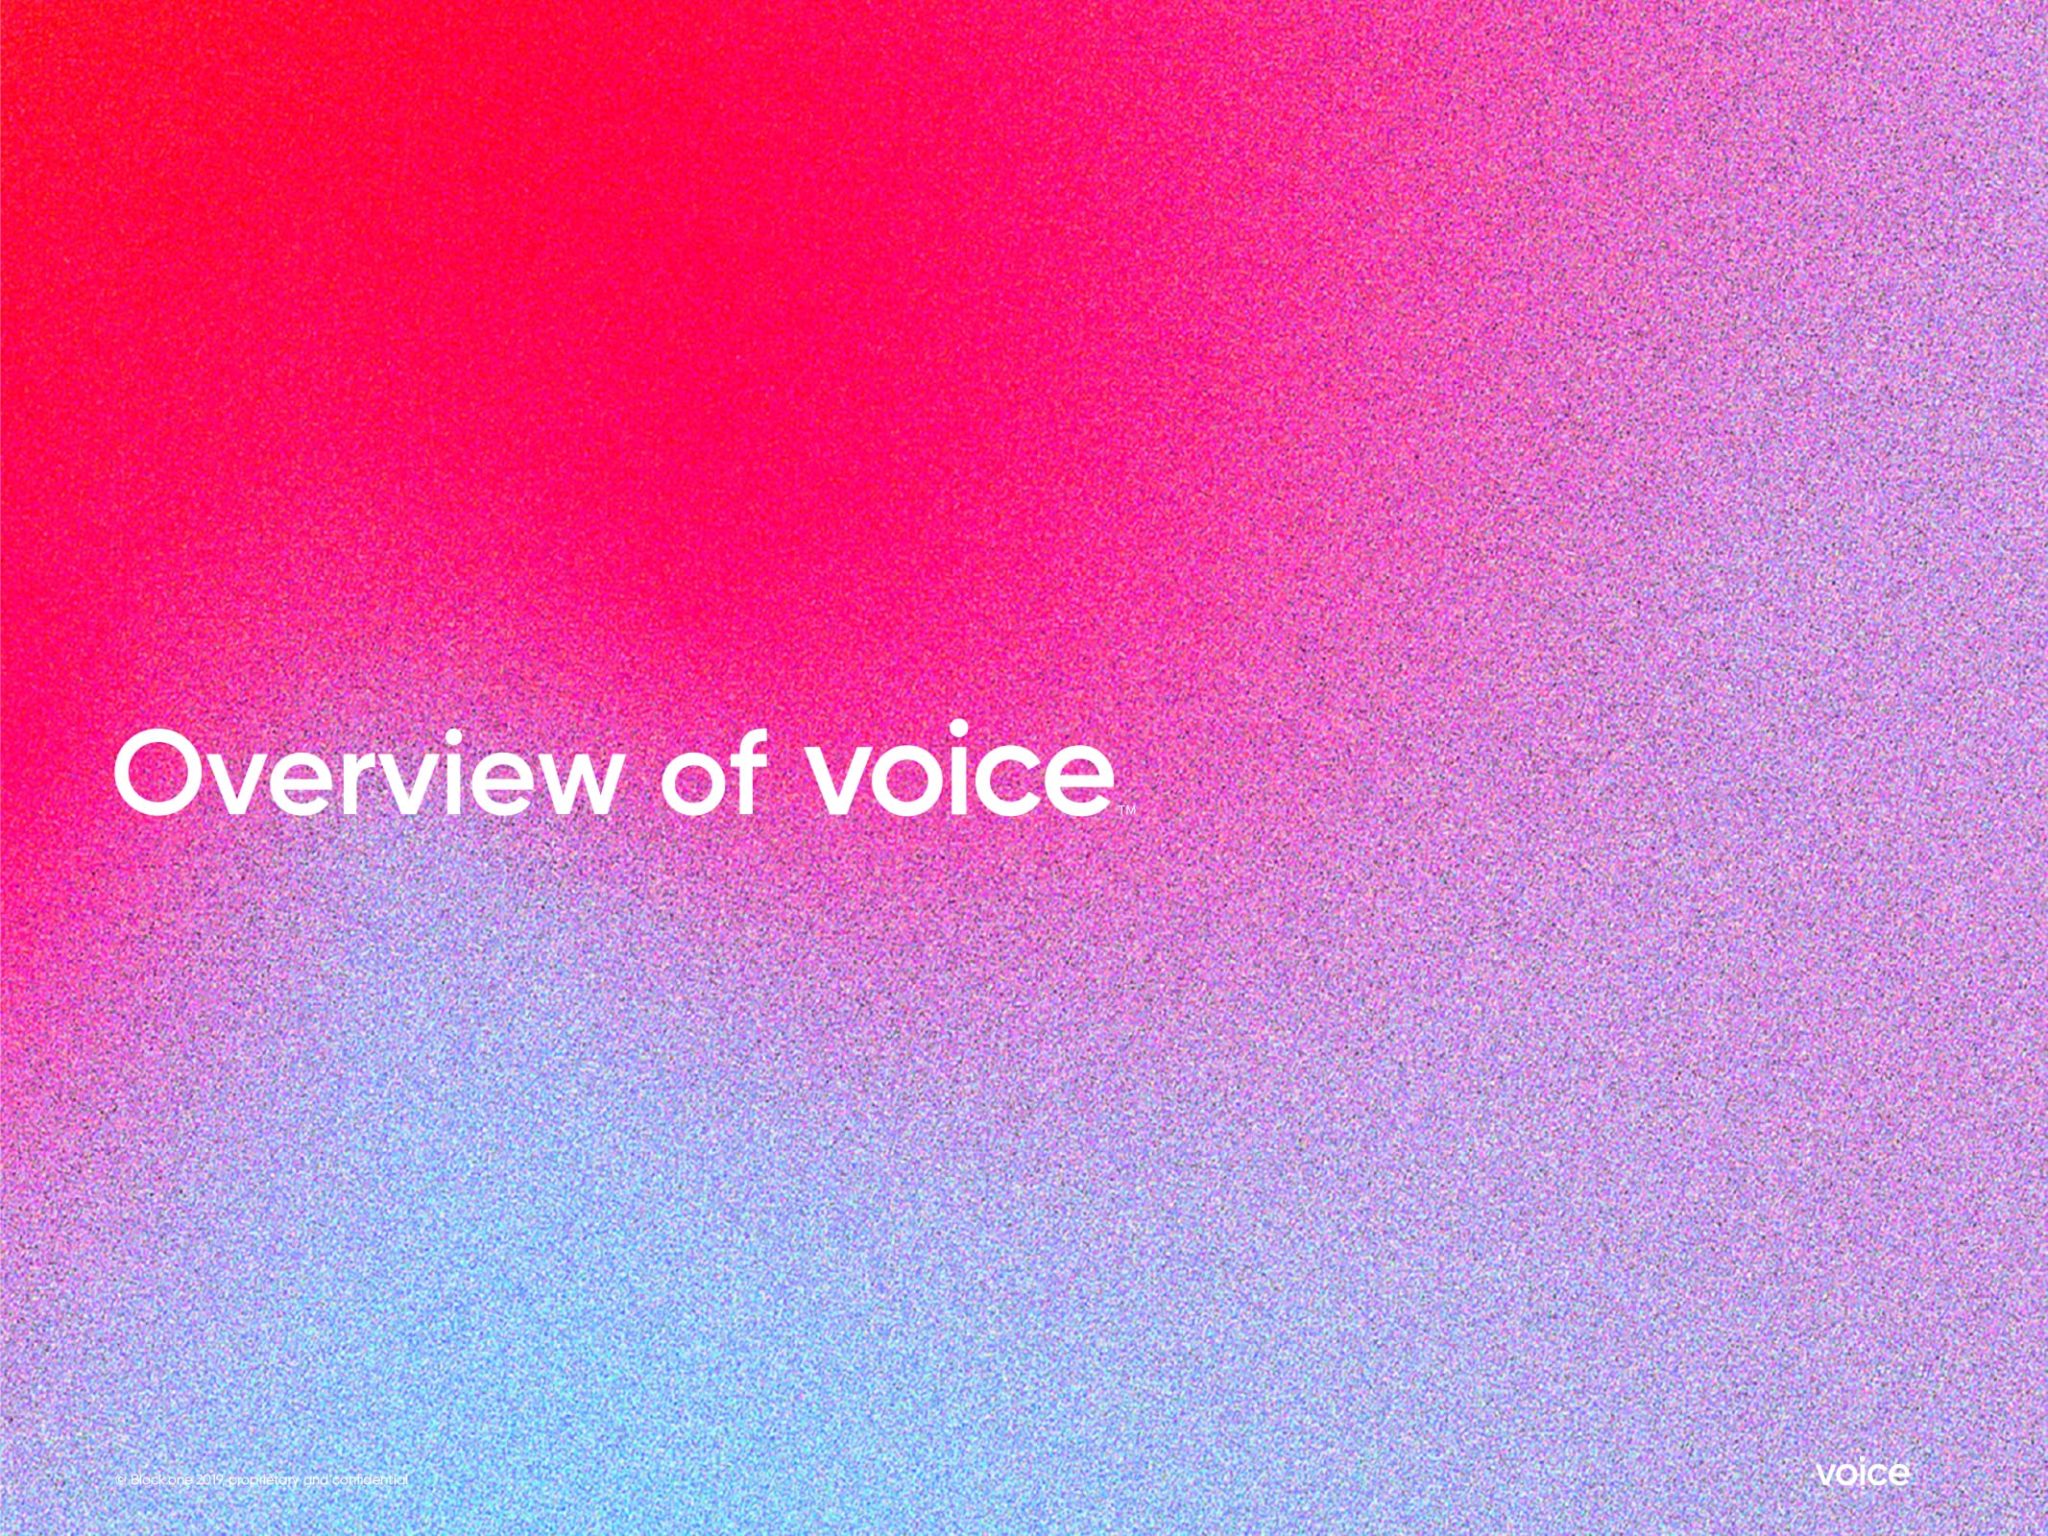 [EOS Inside] VOICE의 고유한 가치 제안, 토큰의 용도 등 - 2편